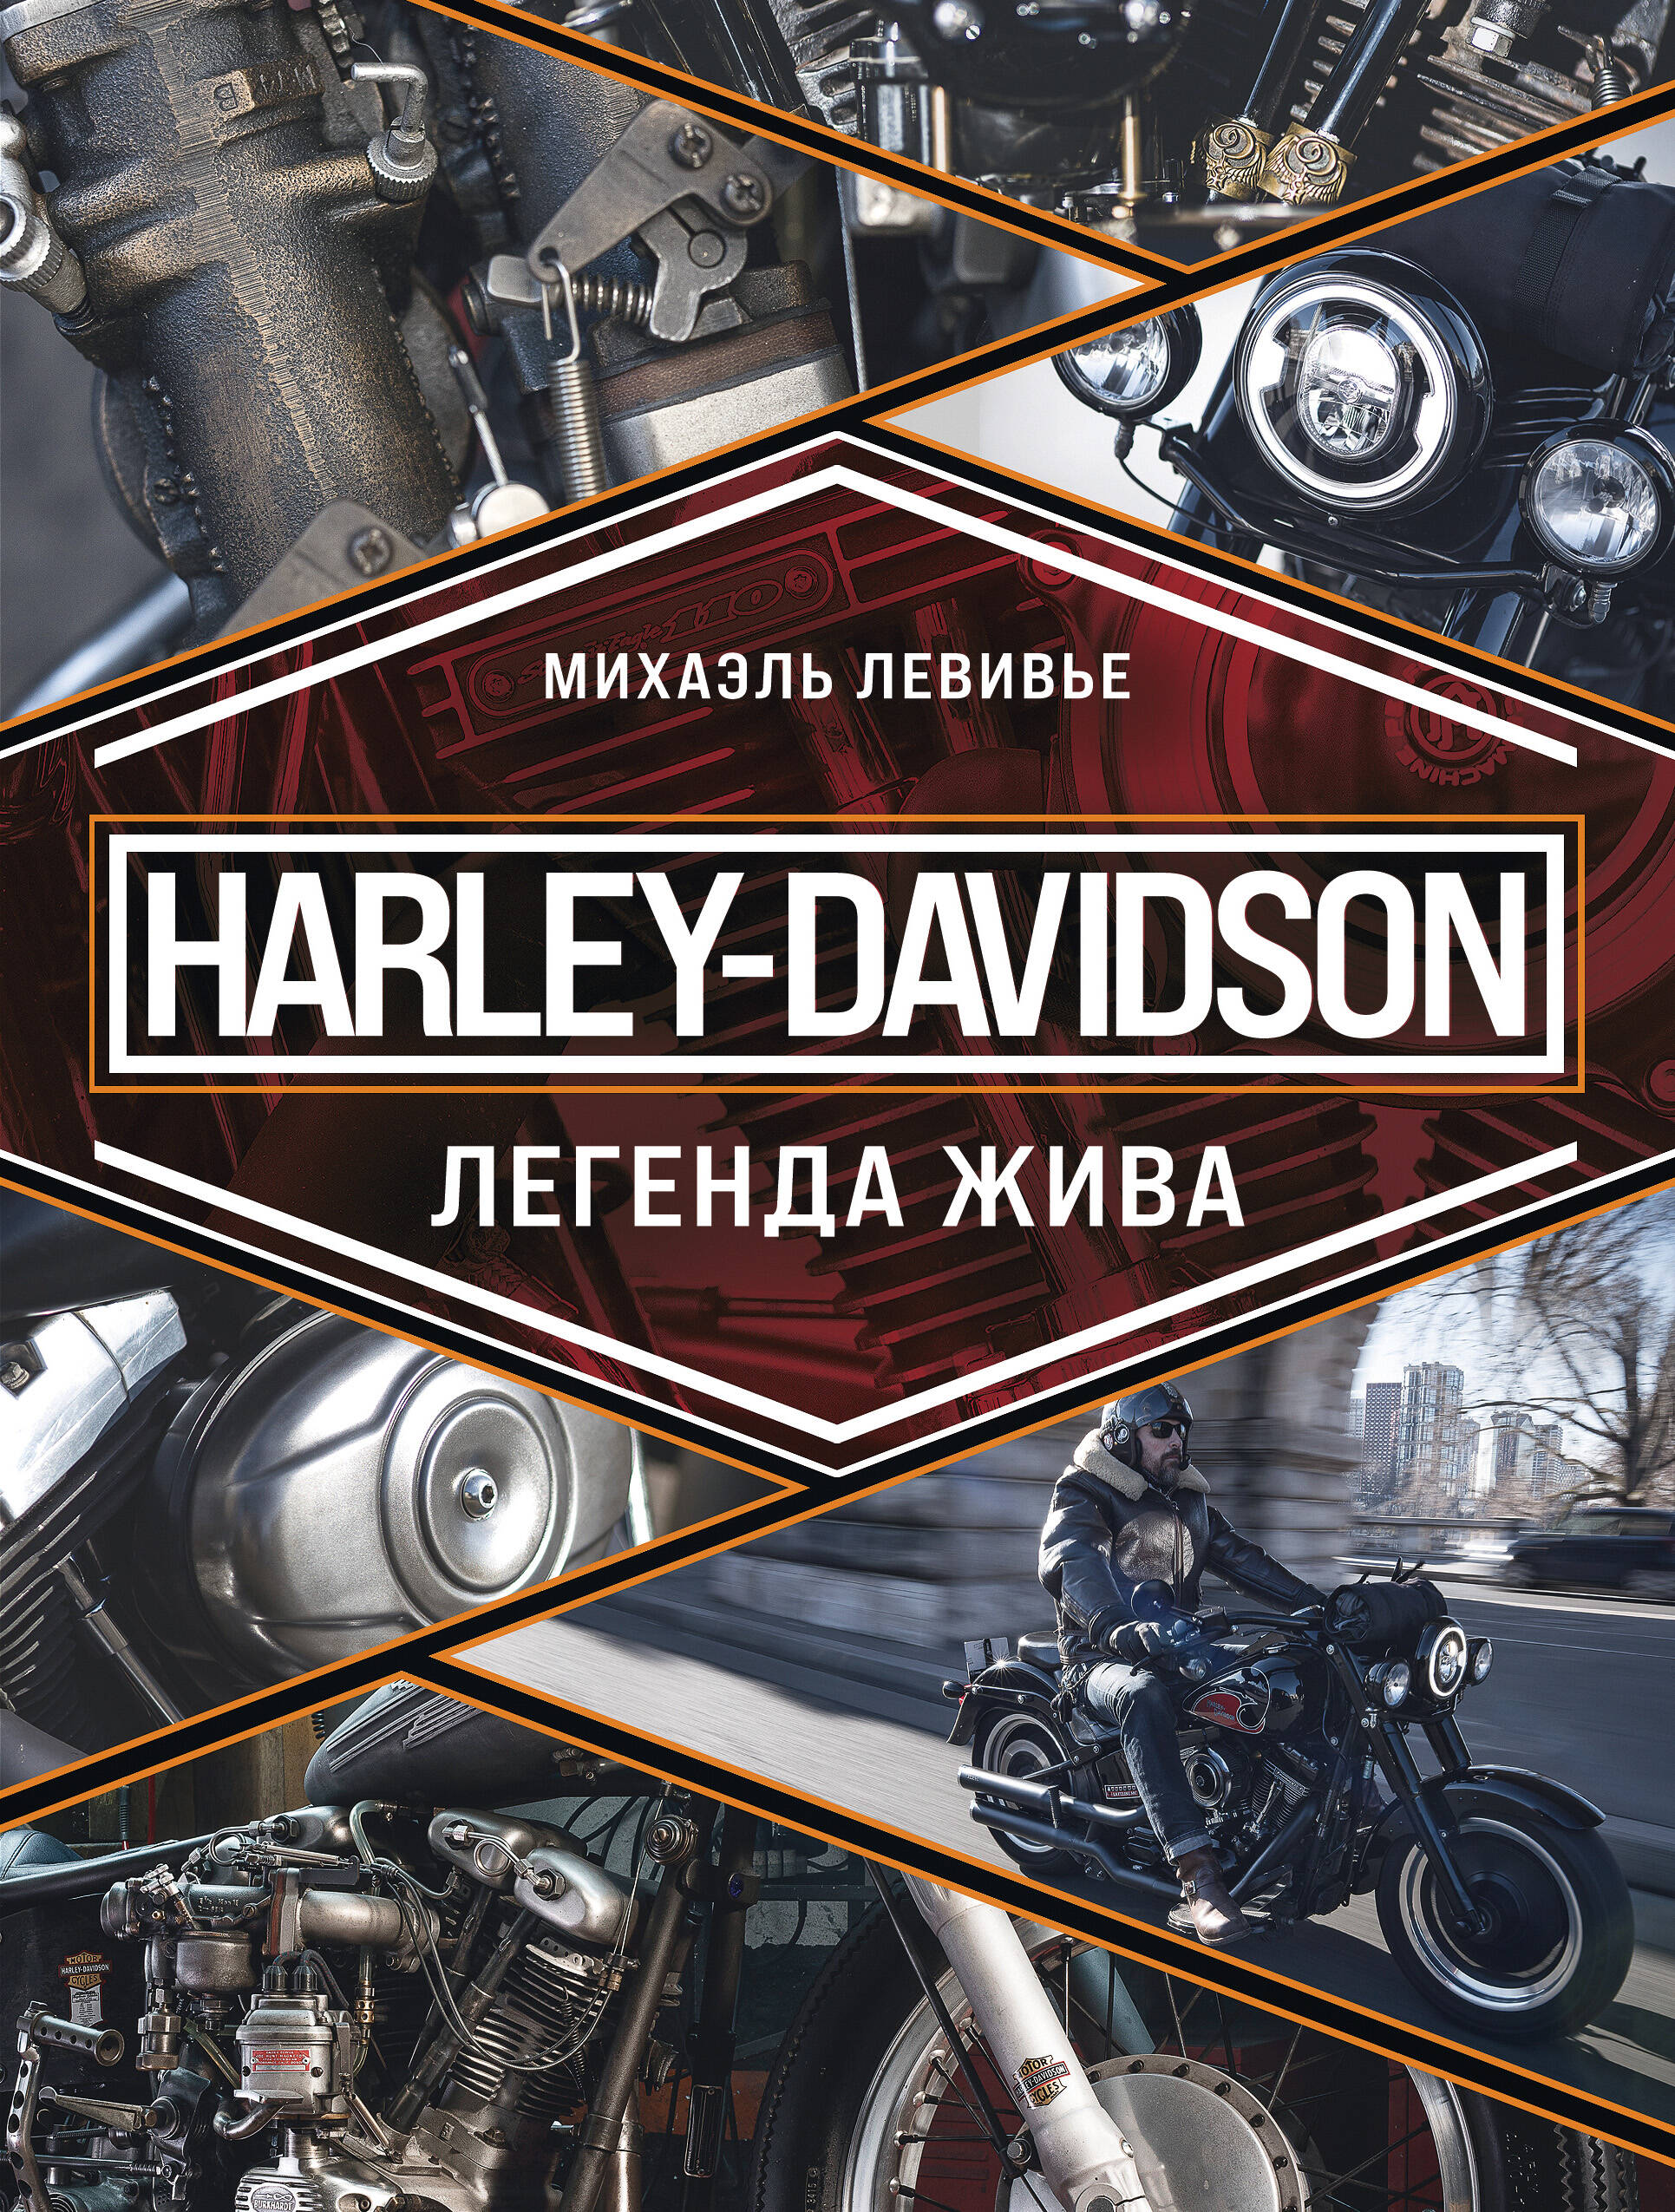 Левивье Михаэль Harley-Davidson. Легенда жива михаэль левивье harley davidson легенда жива